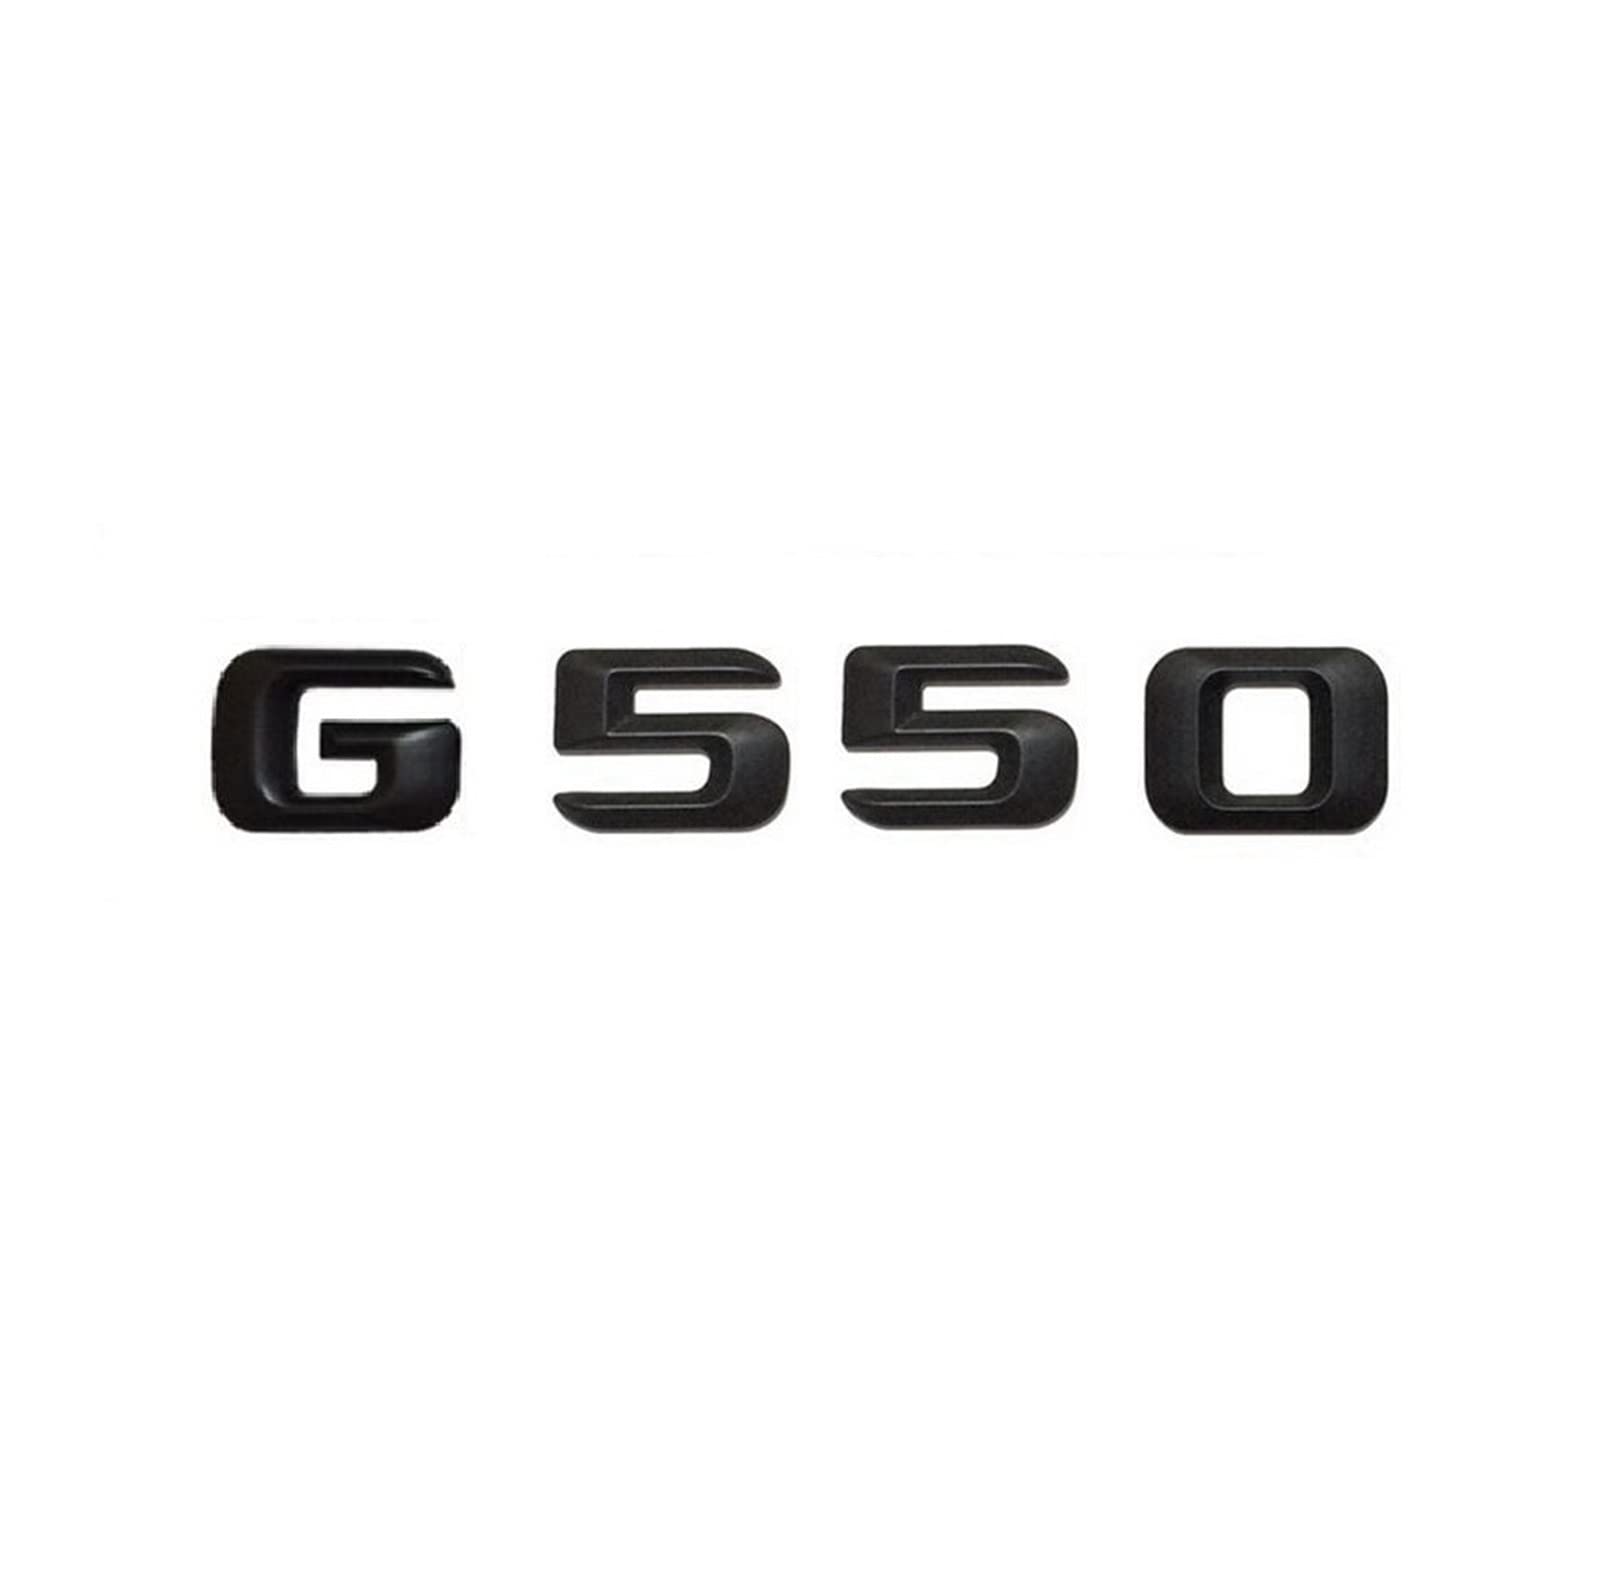 LHYFAGQK Mattschwarz G 550" Kofferraum-hintere Buchstaben, Wörter, Zahlen, Abzeichen, Emblem, Aufkleber, kompatibel mit Mercedes Benz G-Klasse G550 Abzeichen Autoaufkleber von LHYFAGQK